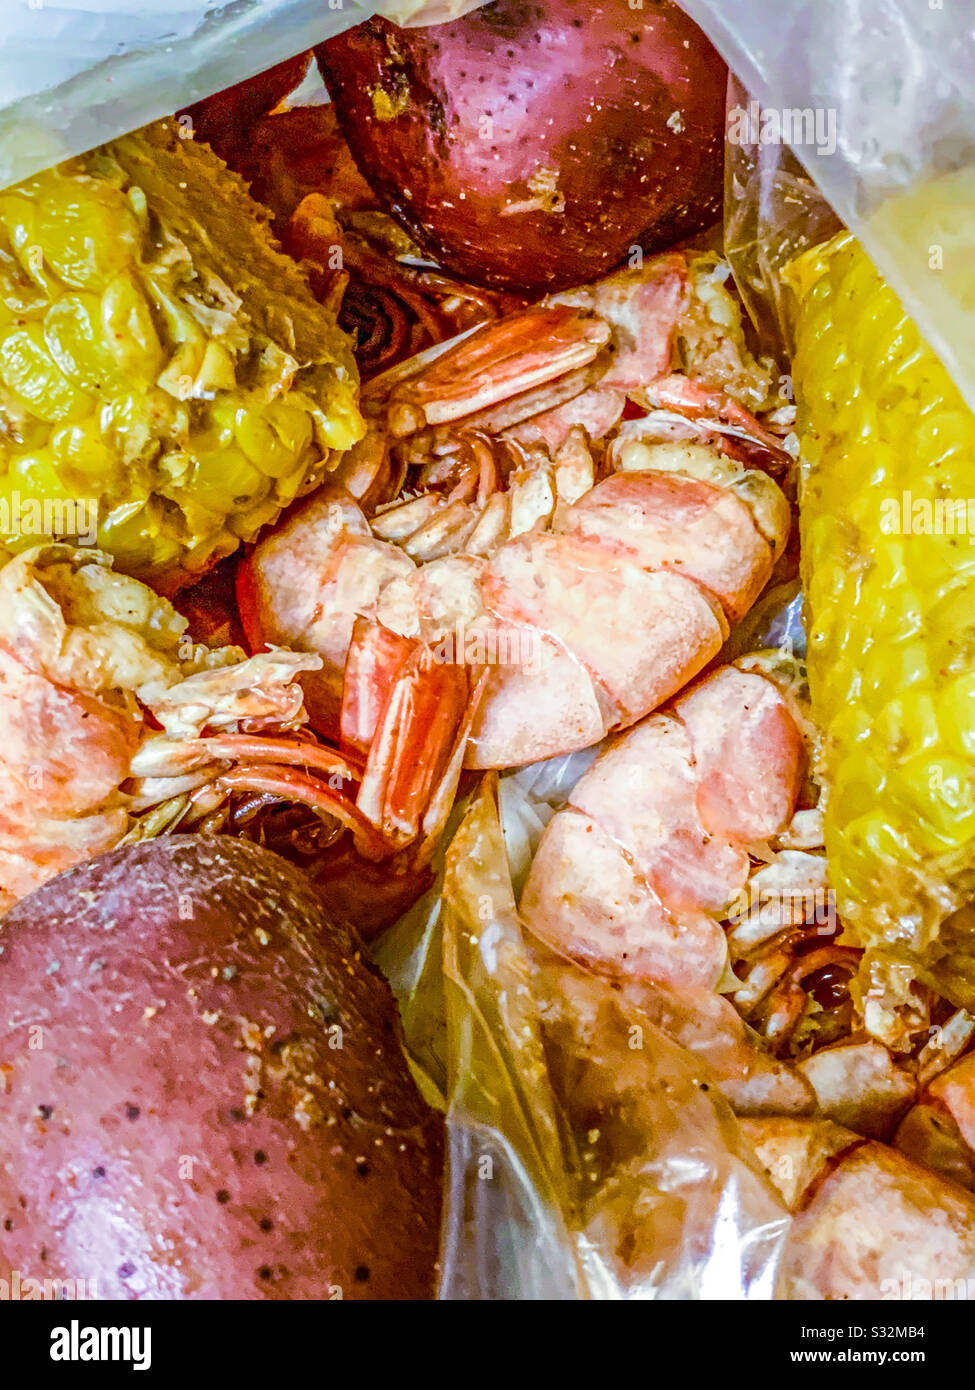 Cajun shrimp boil Stock Photo